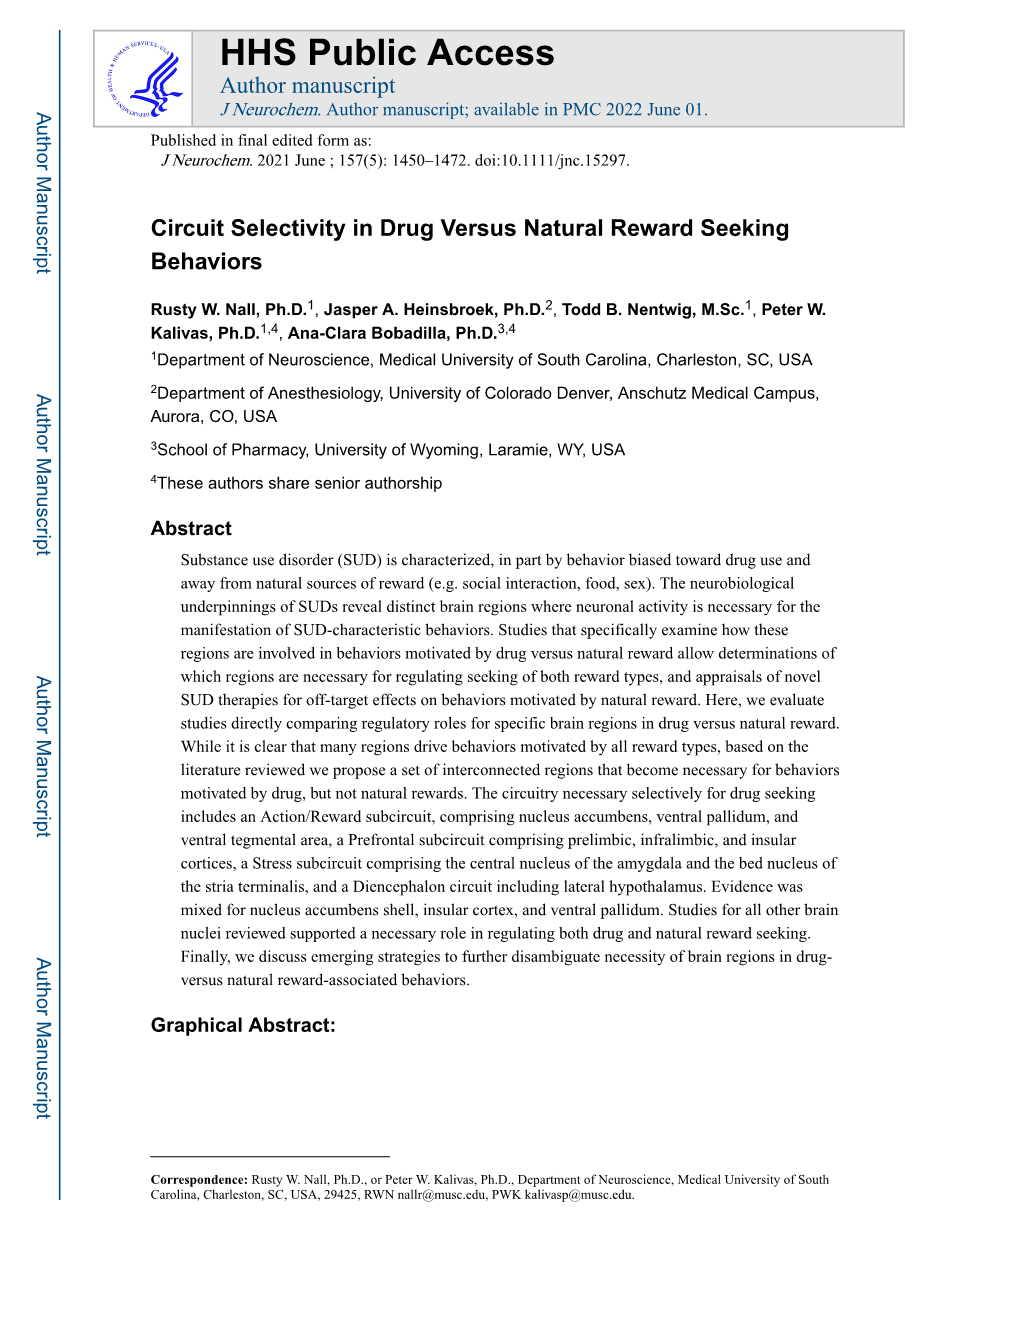 Circuit Selectivity in Drug Versus Natural Reward Seeking Behaviors